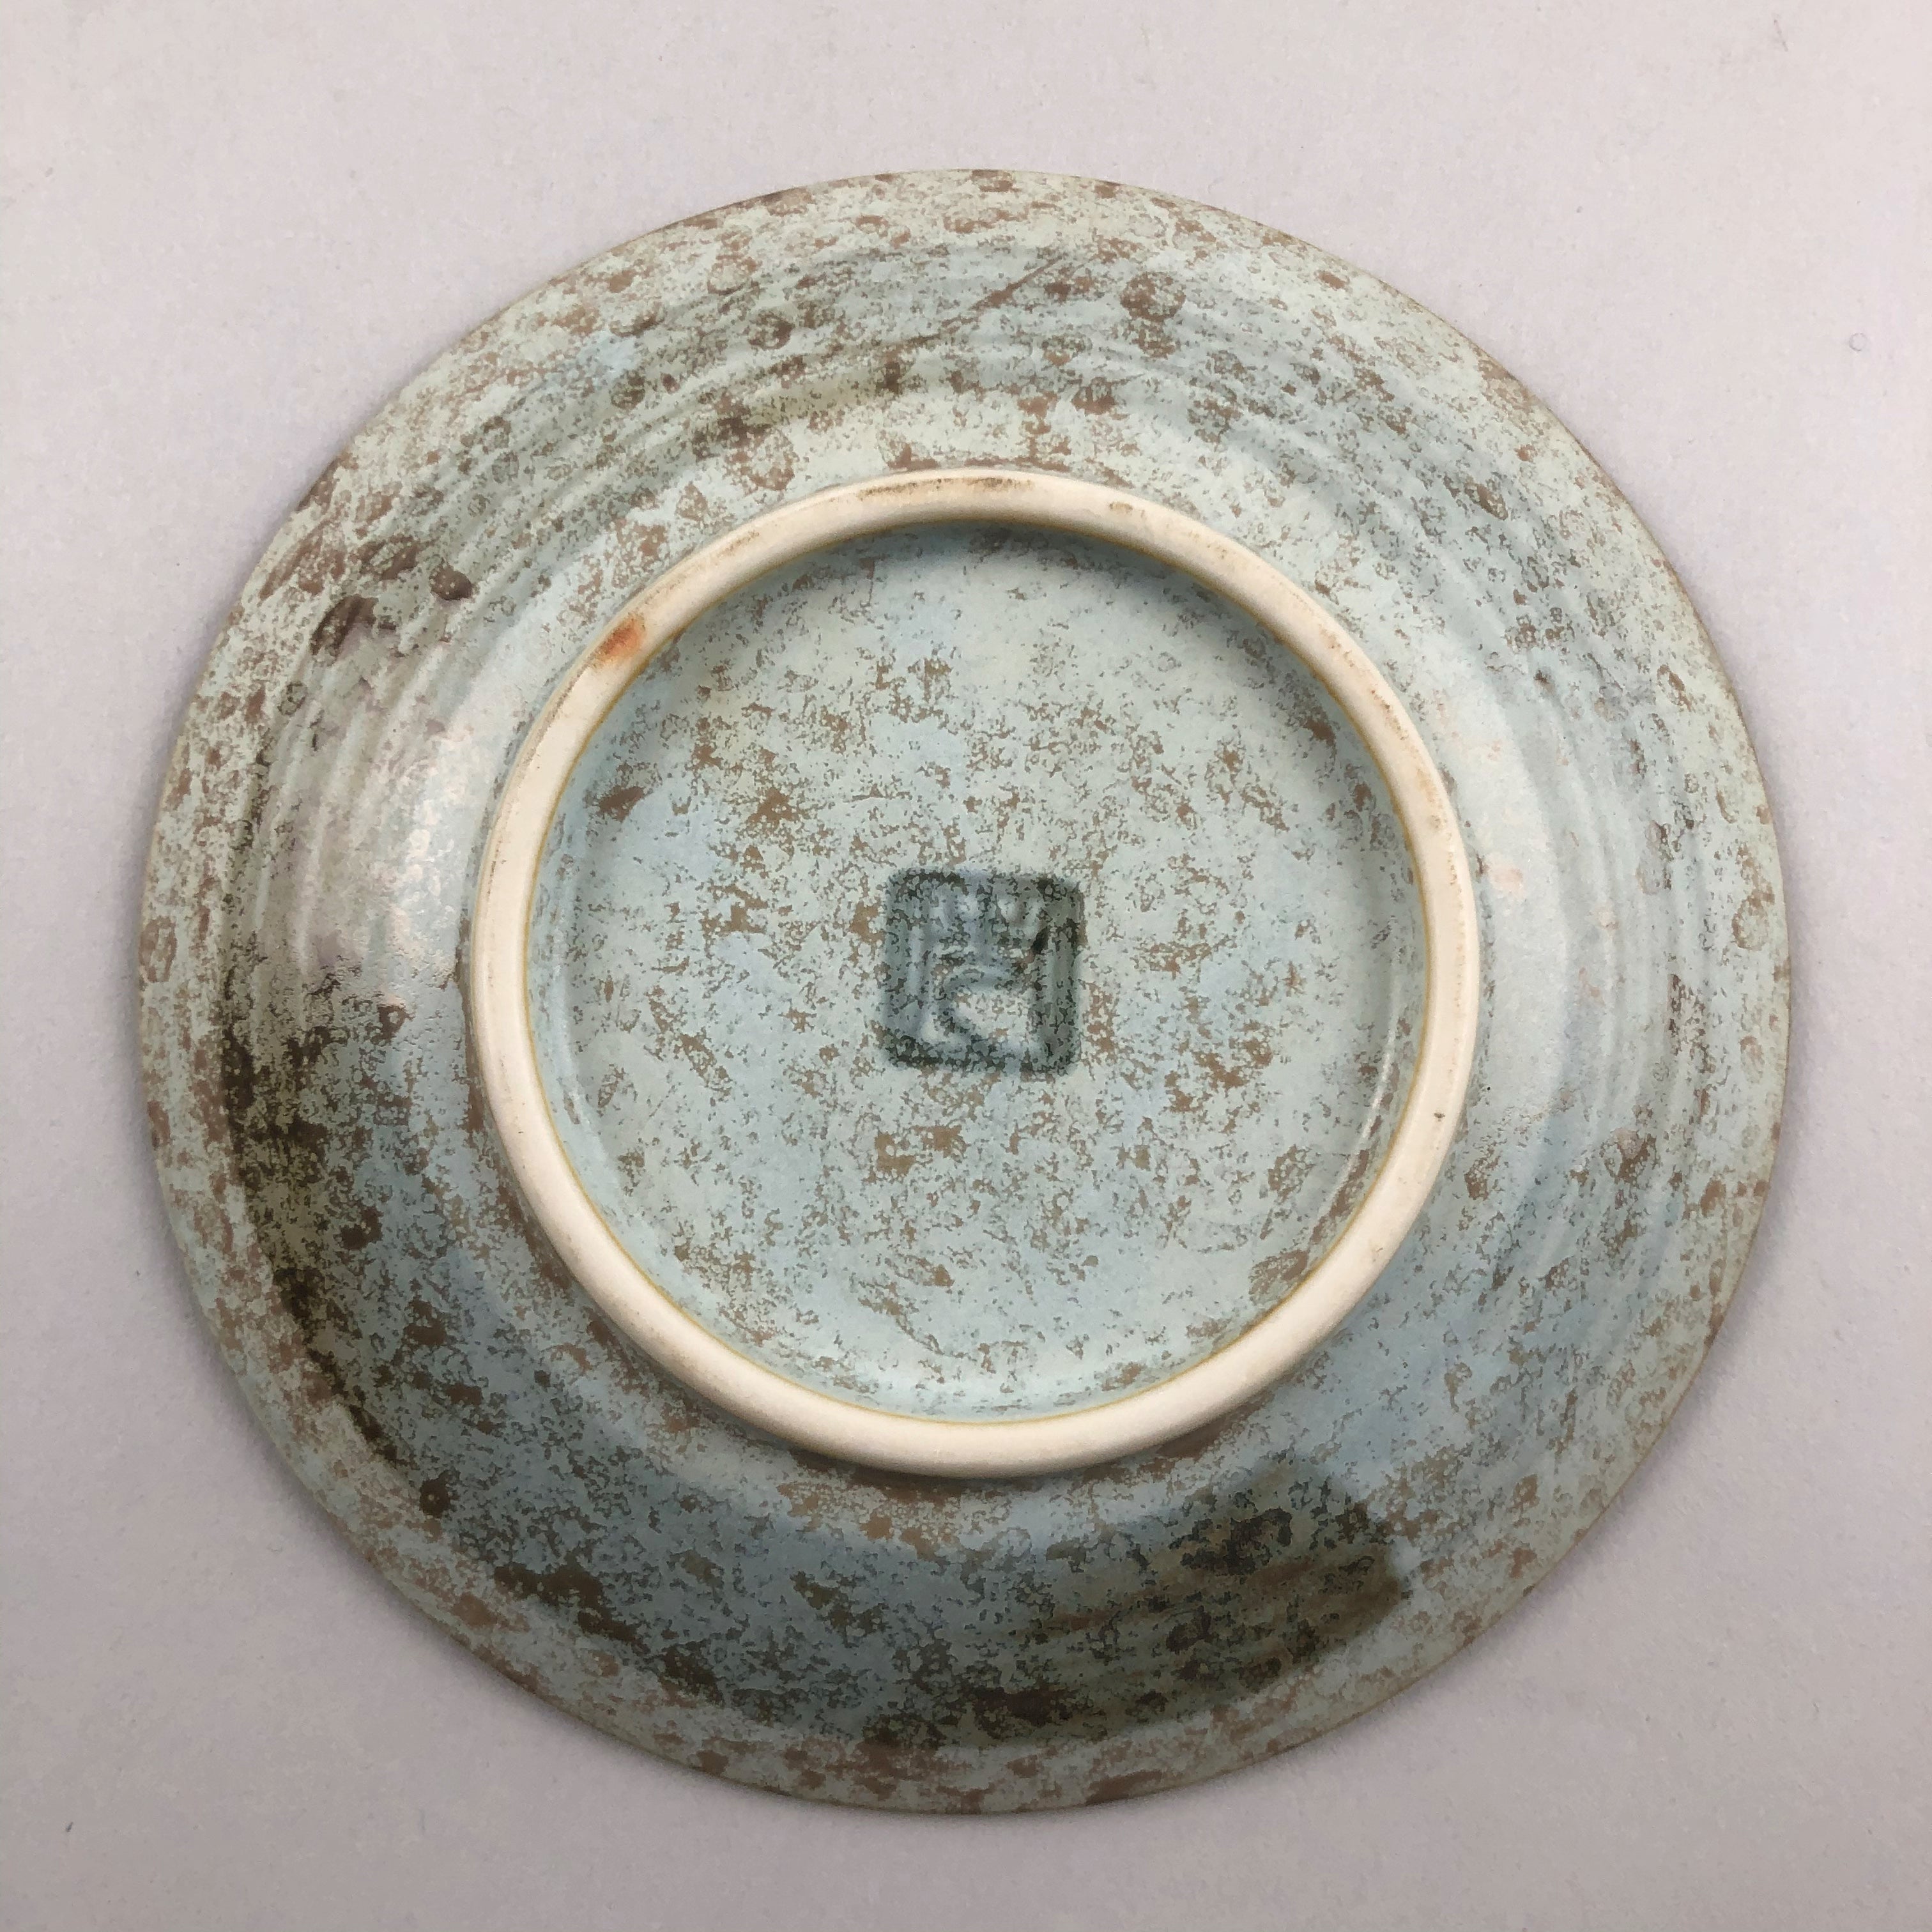 Hakubai Round Plates in three sizes, 3.5"dia., 7.5"dia., and 10"dia.